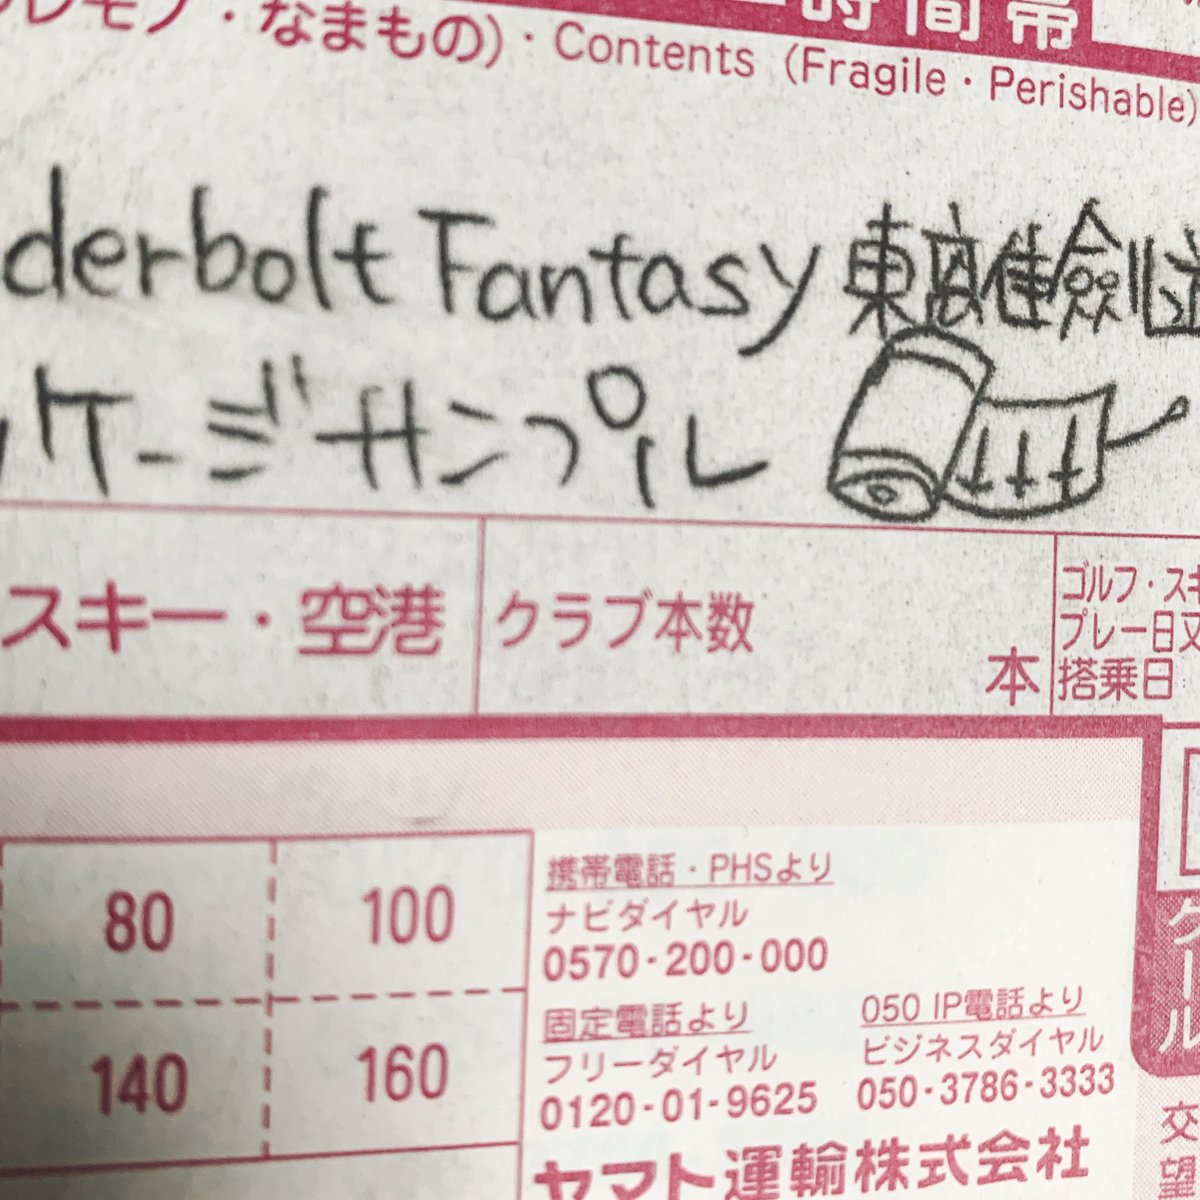 ありがとうございます!Thunderbolt Fantasyのblu-rayサンプルをいただきました!……いただいたのですが品名に魔剣目録描いてある!?スタッフさんの愛凄い! 